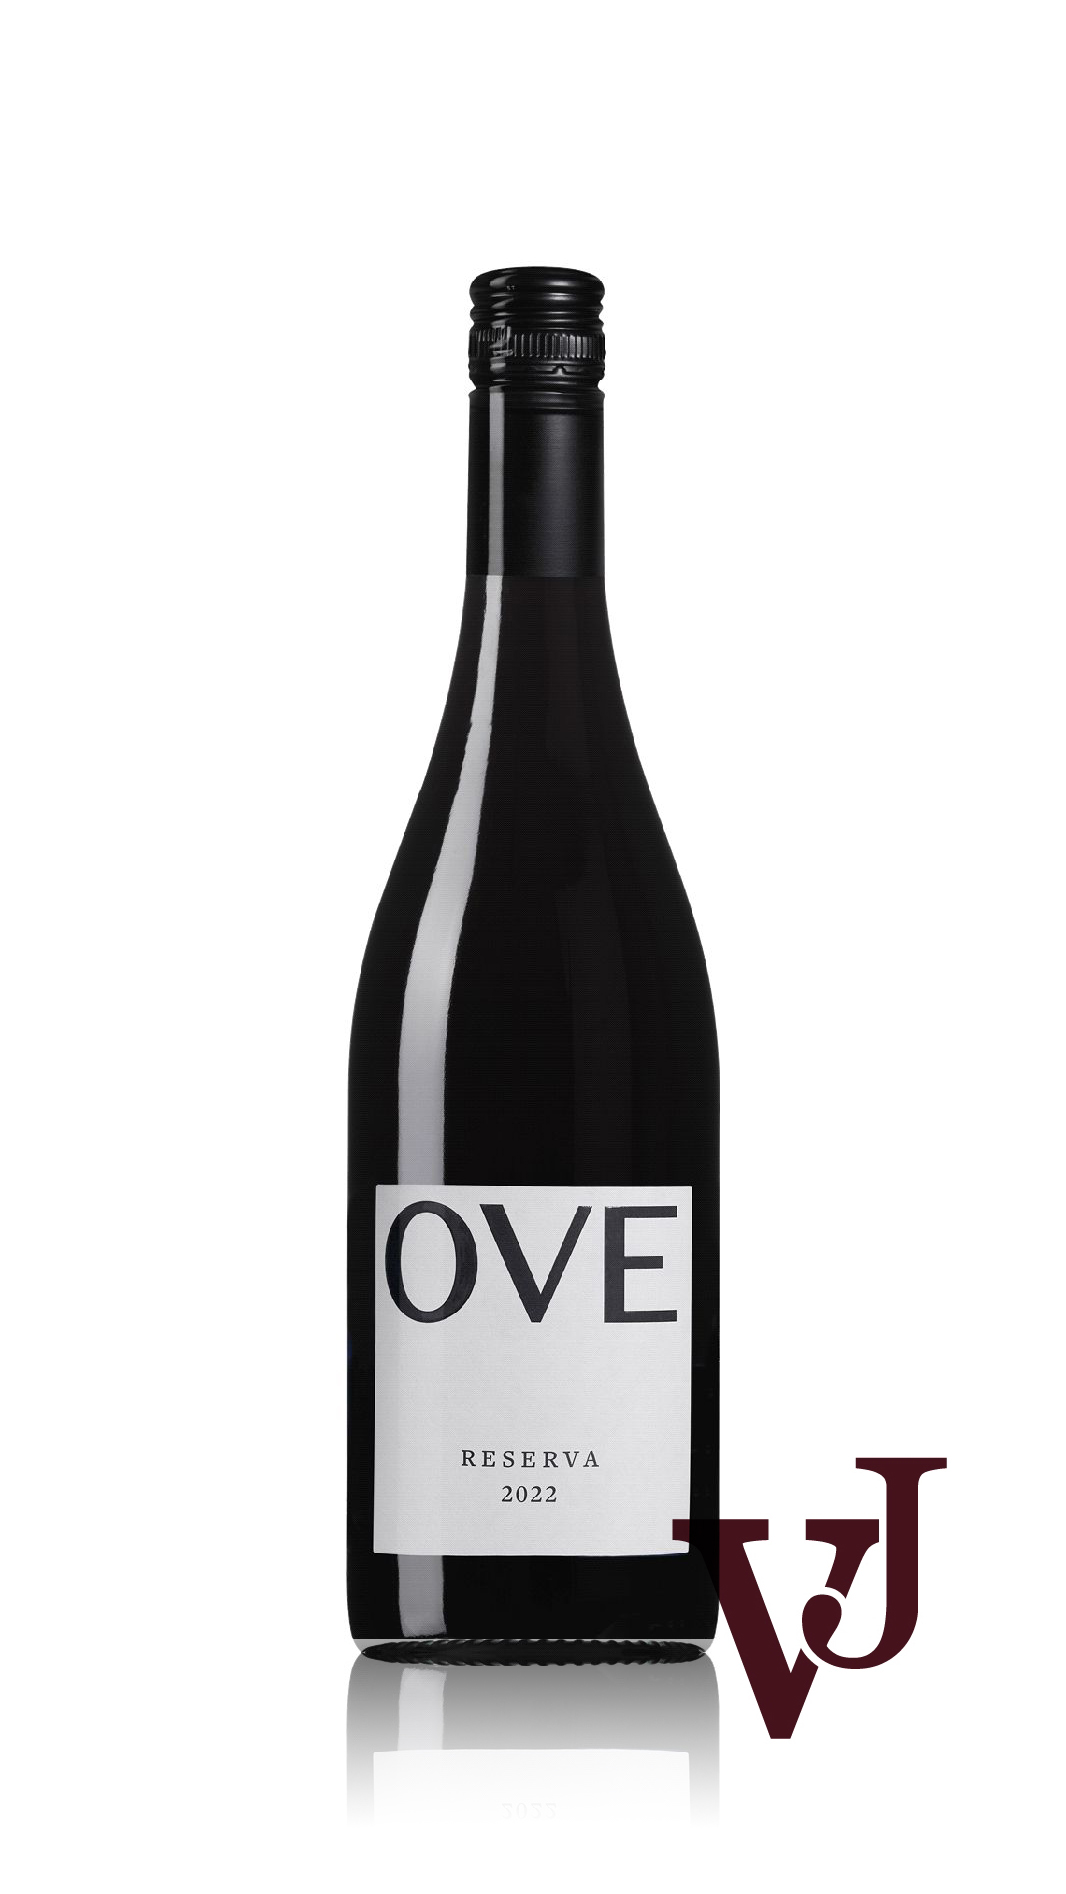 Rött Vin - OVE Reserva 2022 artikel nummer 2008001 från producenten My Pleasure in Sweden AB från området Portugal